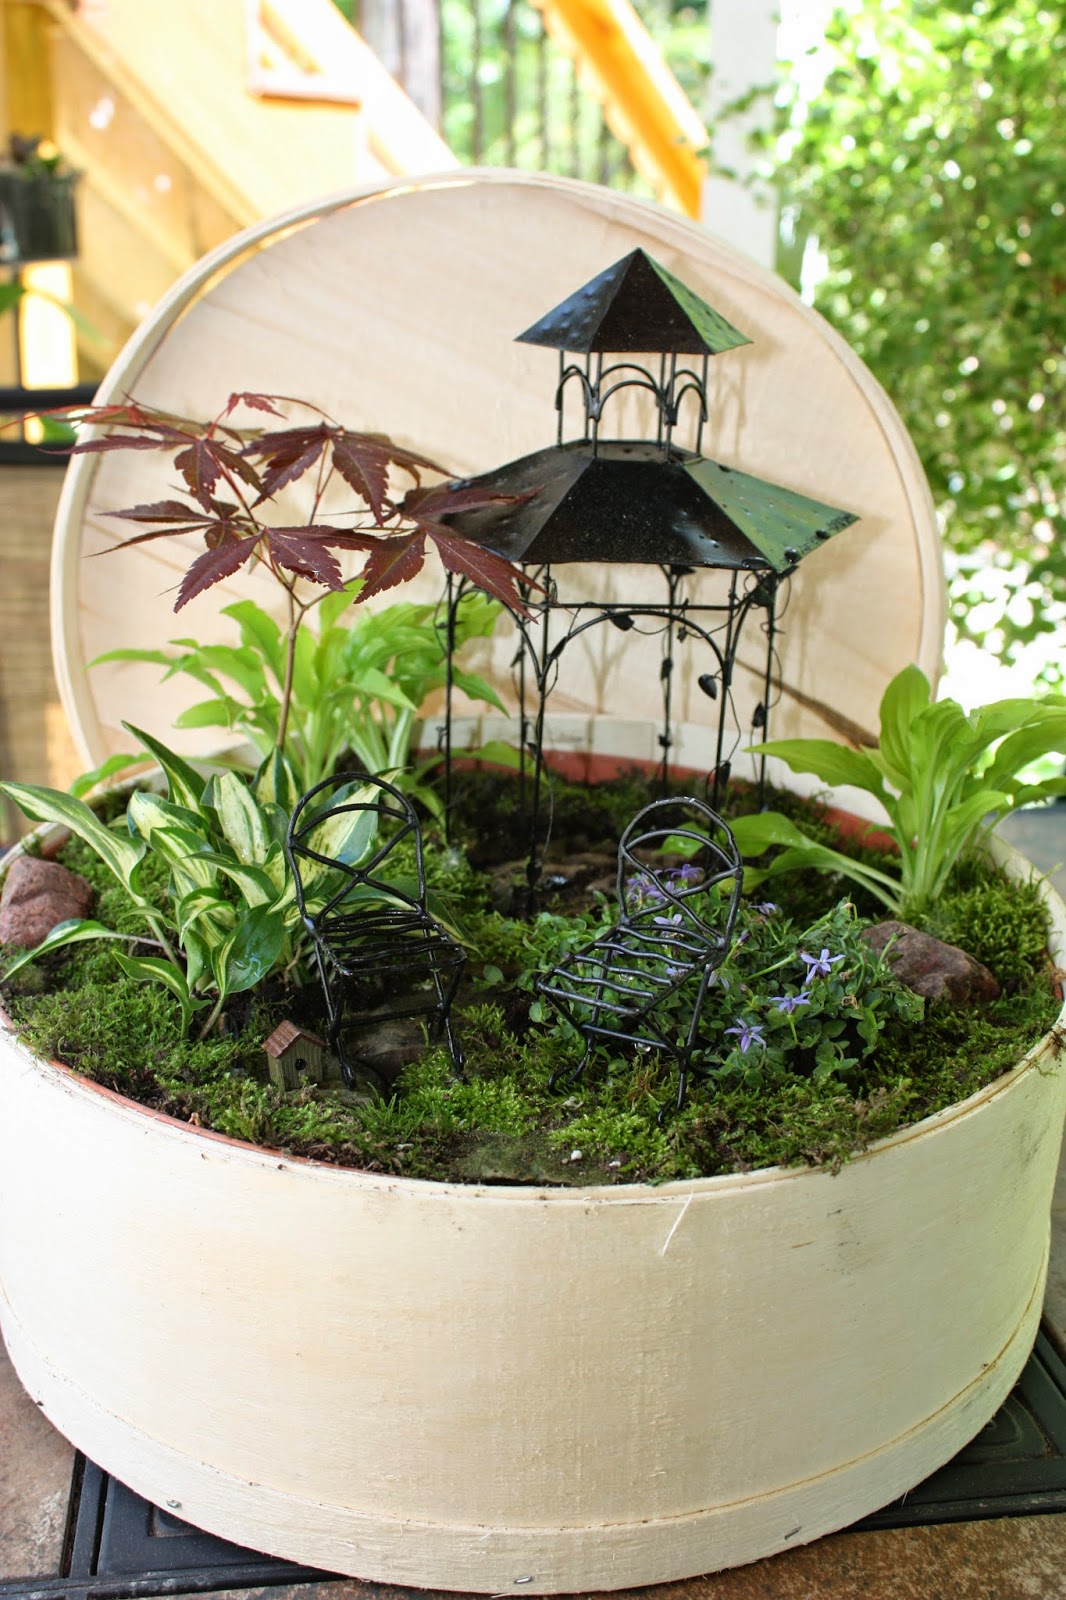 Garden Thyme with the Creative Gardener: Creating Fairy Gardens or ...